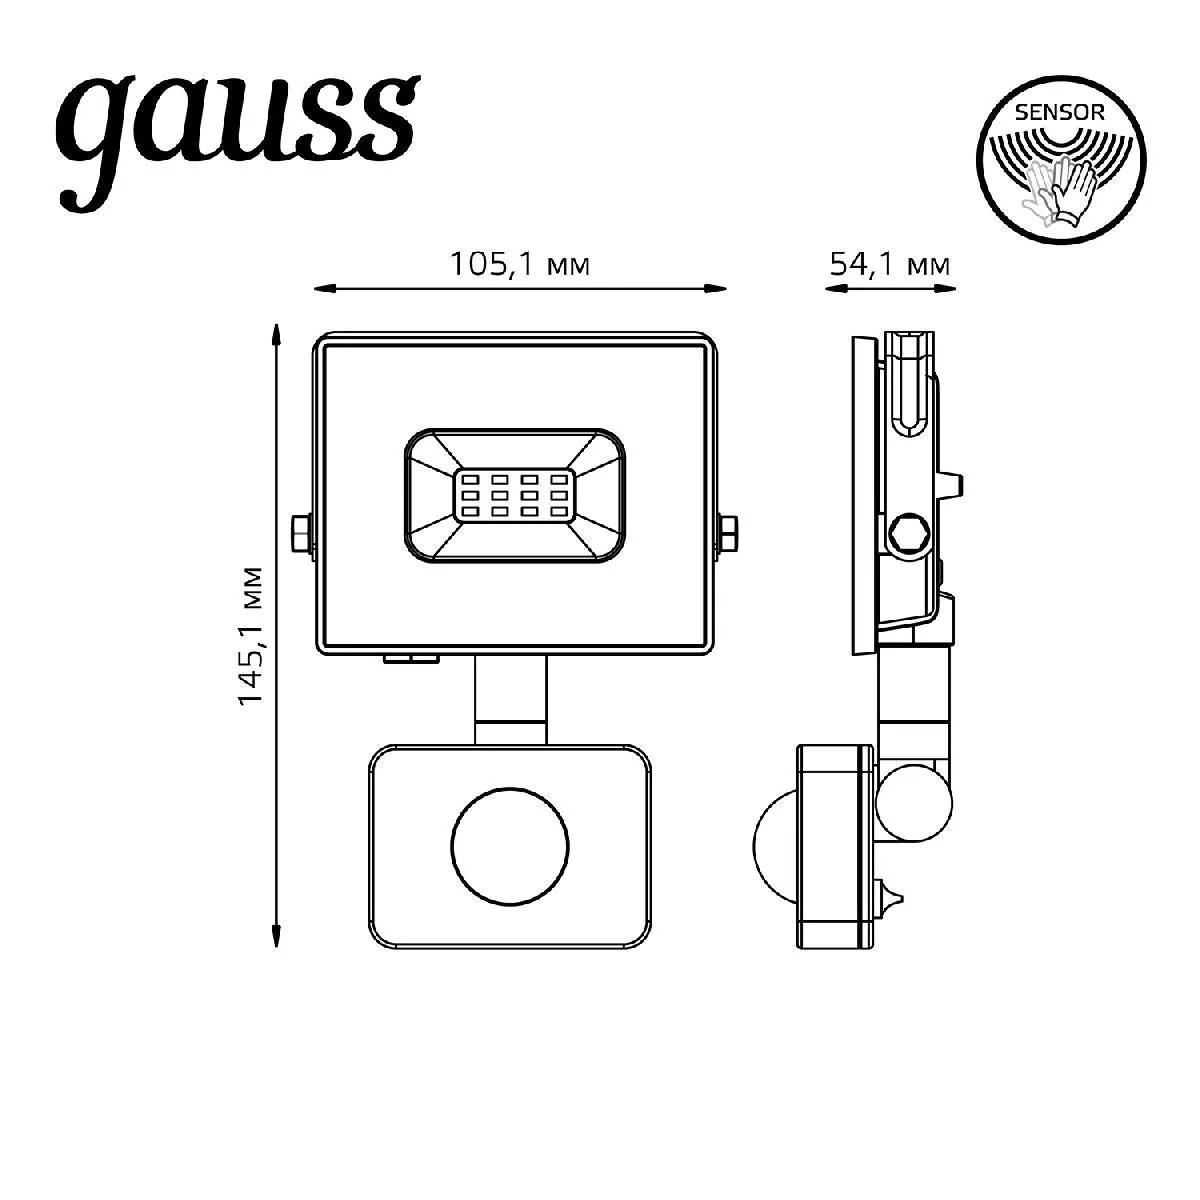 Прожектор Gauss Elementary-S 10W 850lm 6500К 175-265V IP65 черный с датчиком движения LED 1/20